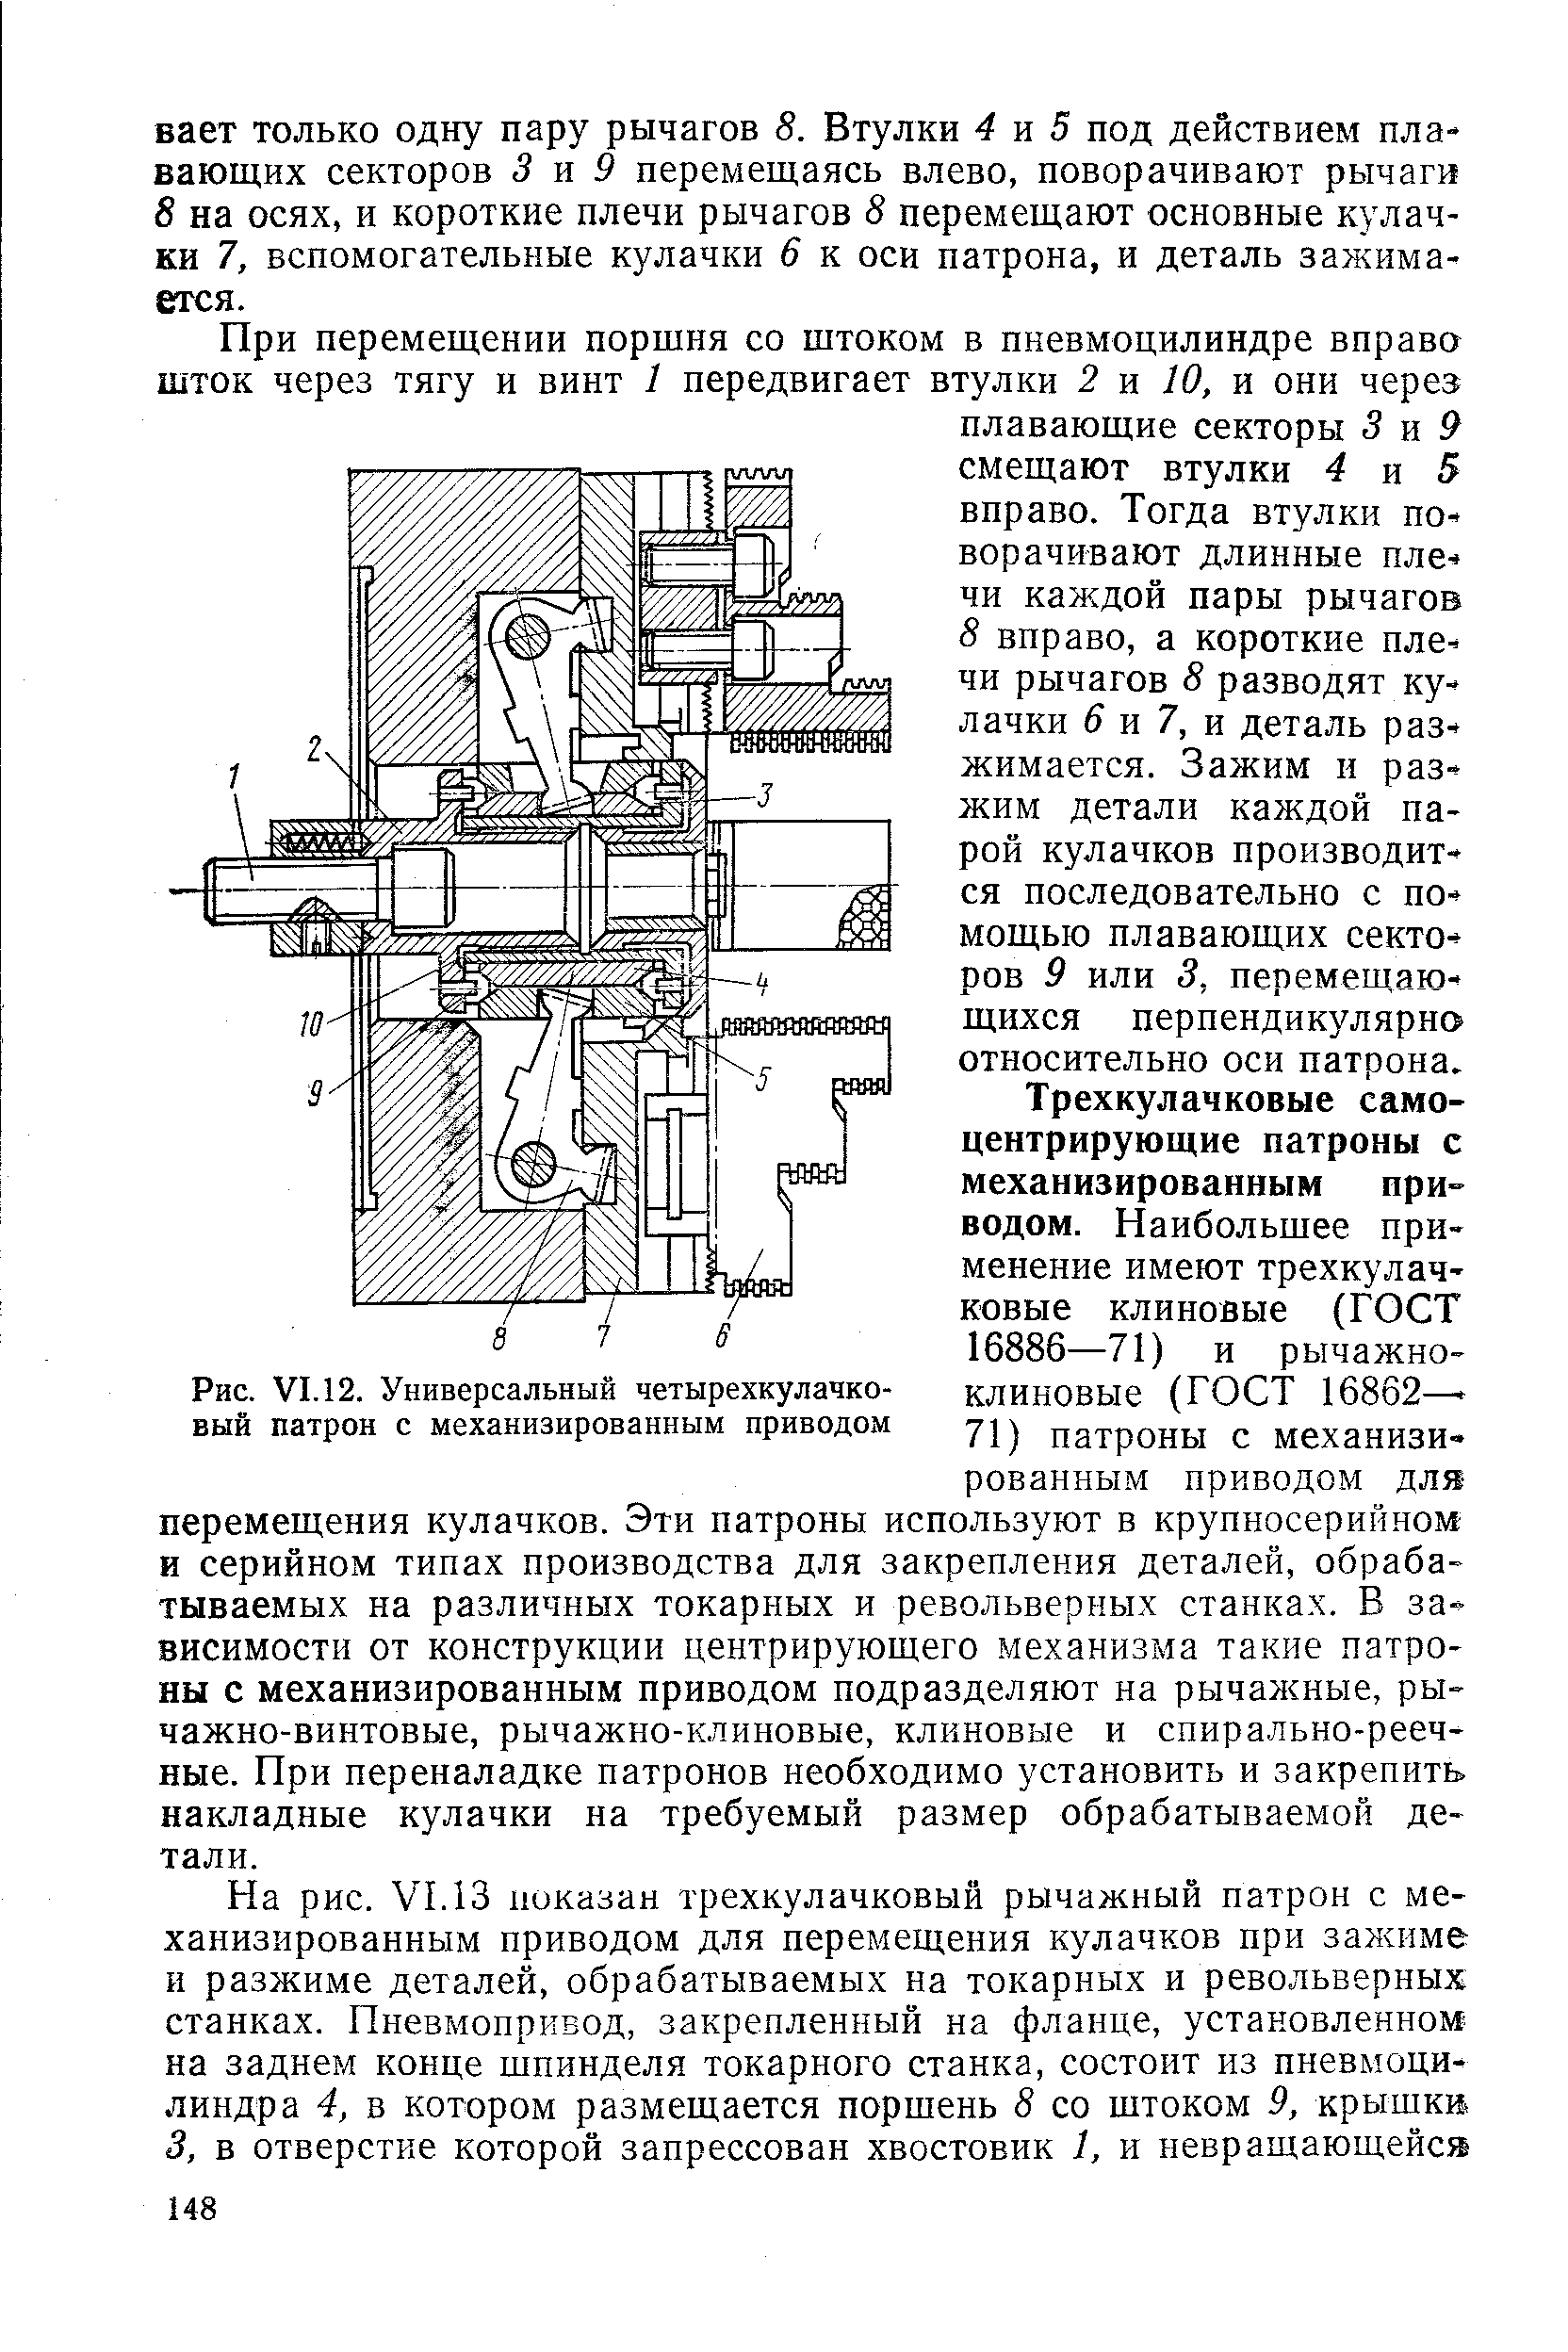 Рис. VI. 12. Универсальный четырехкулачковый патрон с механизированным приводом
